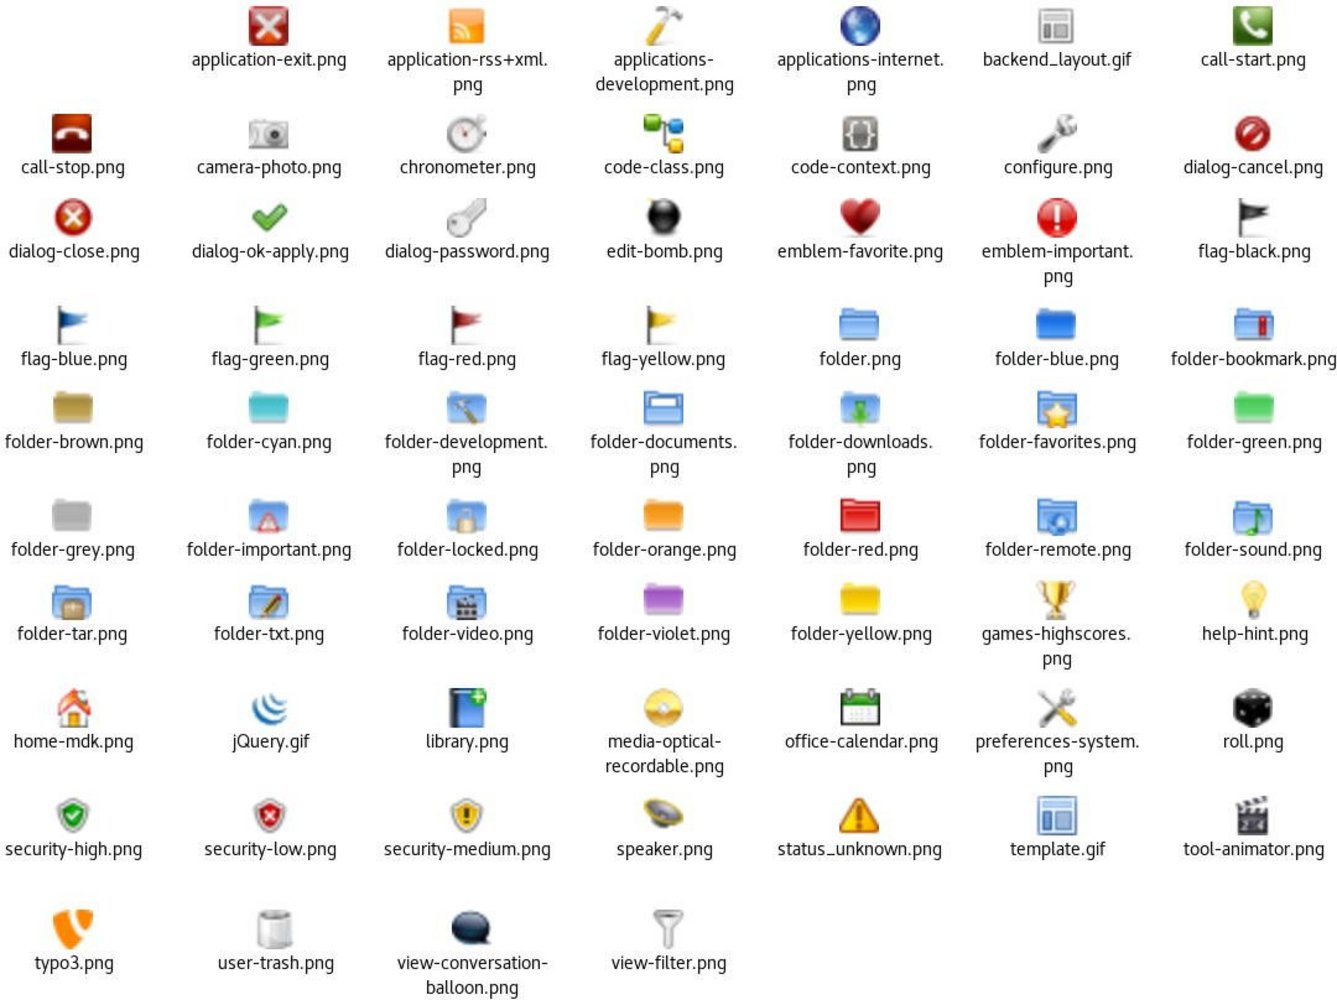 Die bisherigen 66 Icons: von Application-Exit über Edit-Bomb bis View-Filter